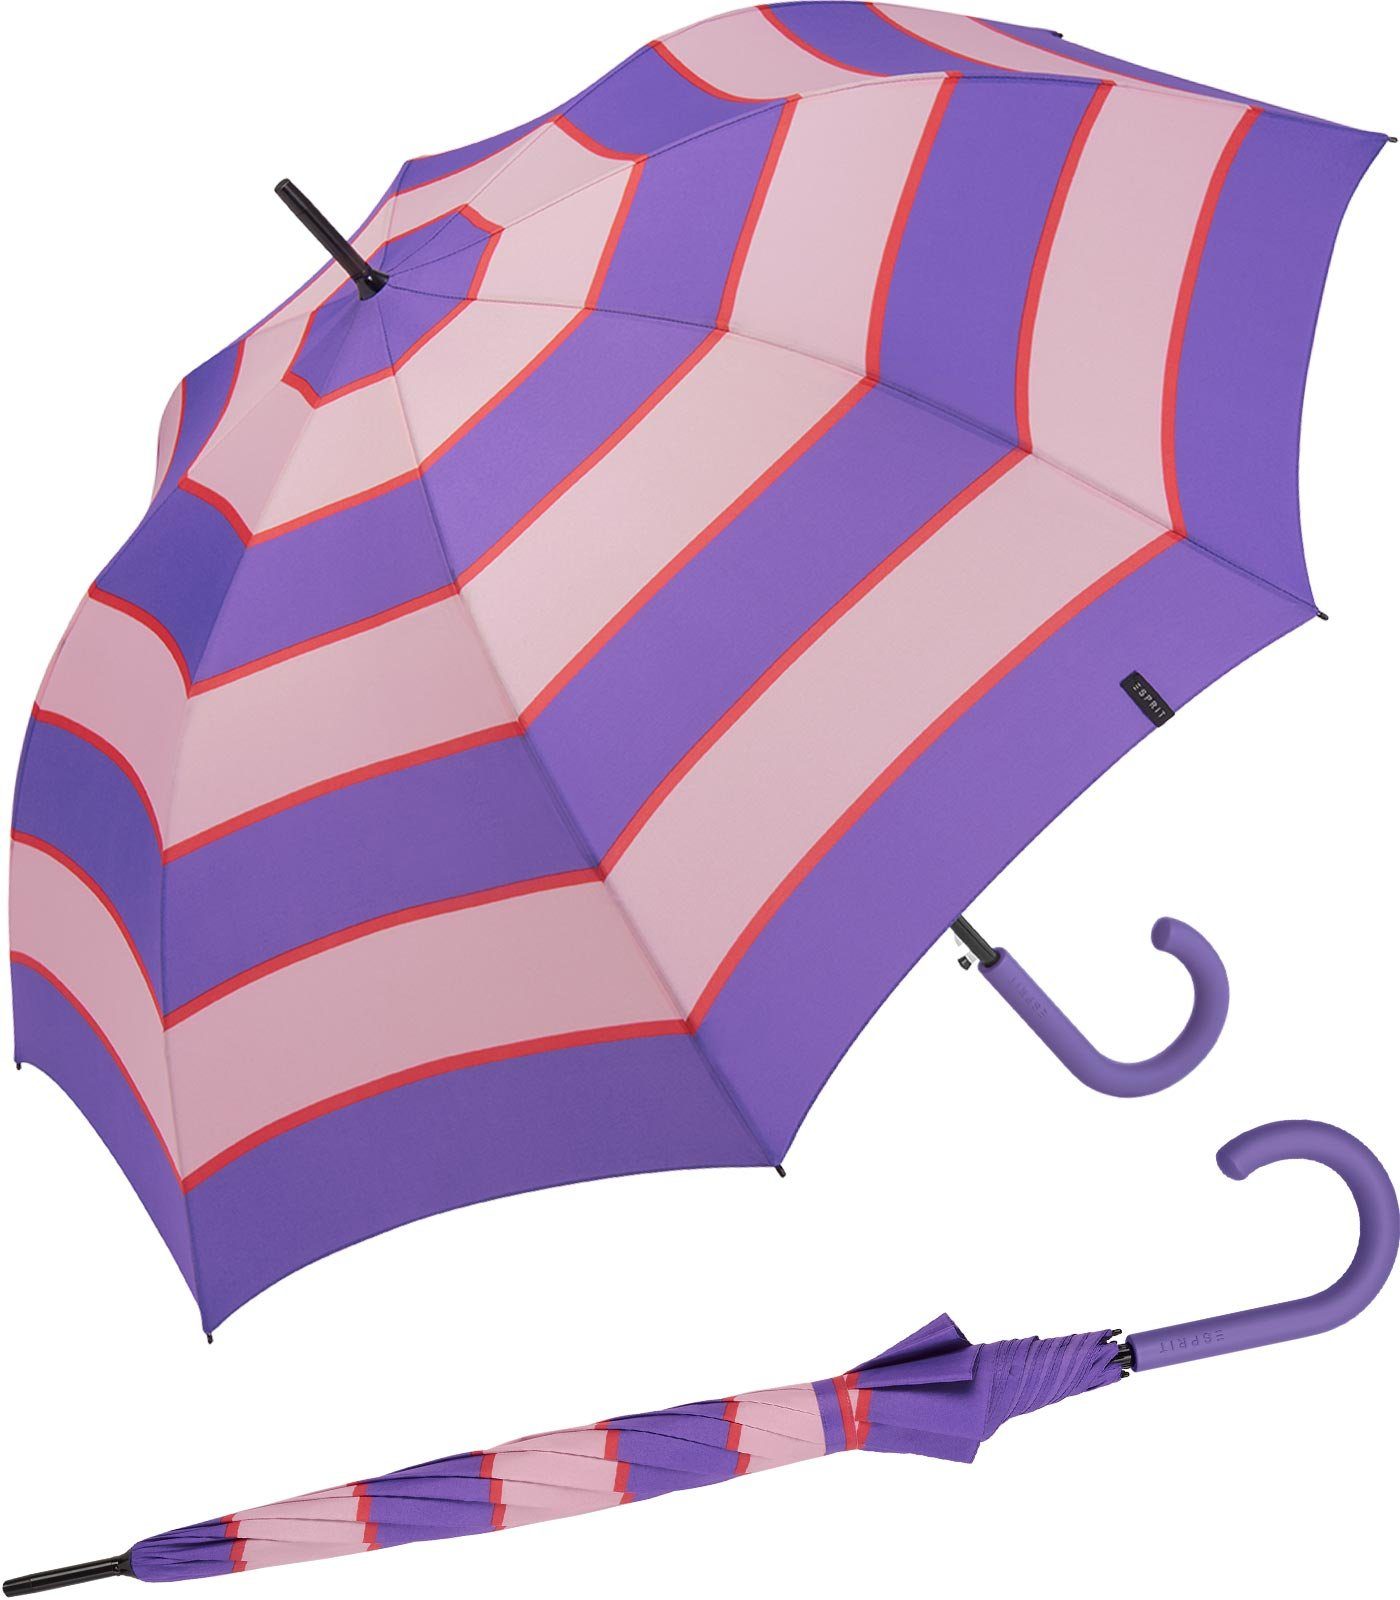 Esprit Langregenschirm Damen Auf-Automatik Collegiate Stripe deeplavender, groß, stabil, mit Streifen-Muster lila-altrosa